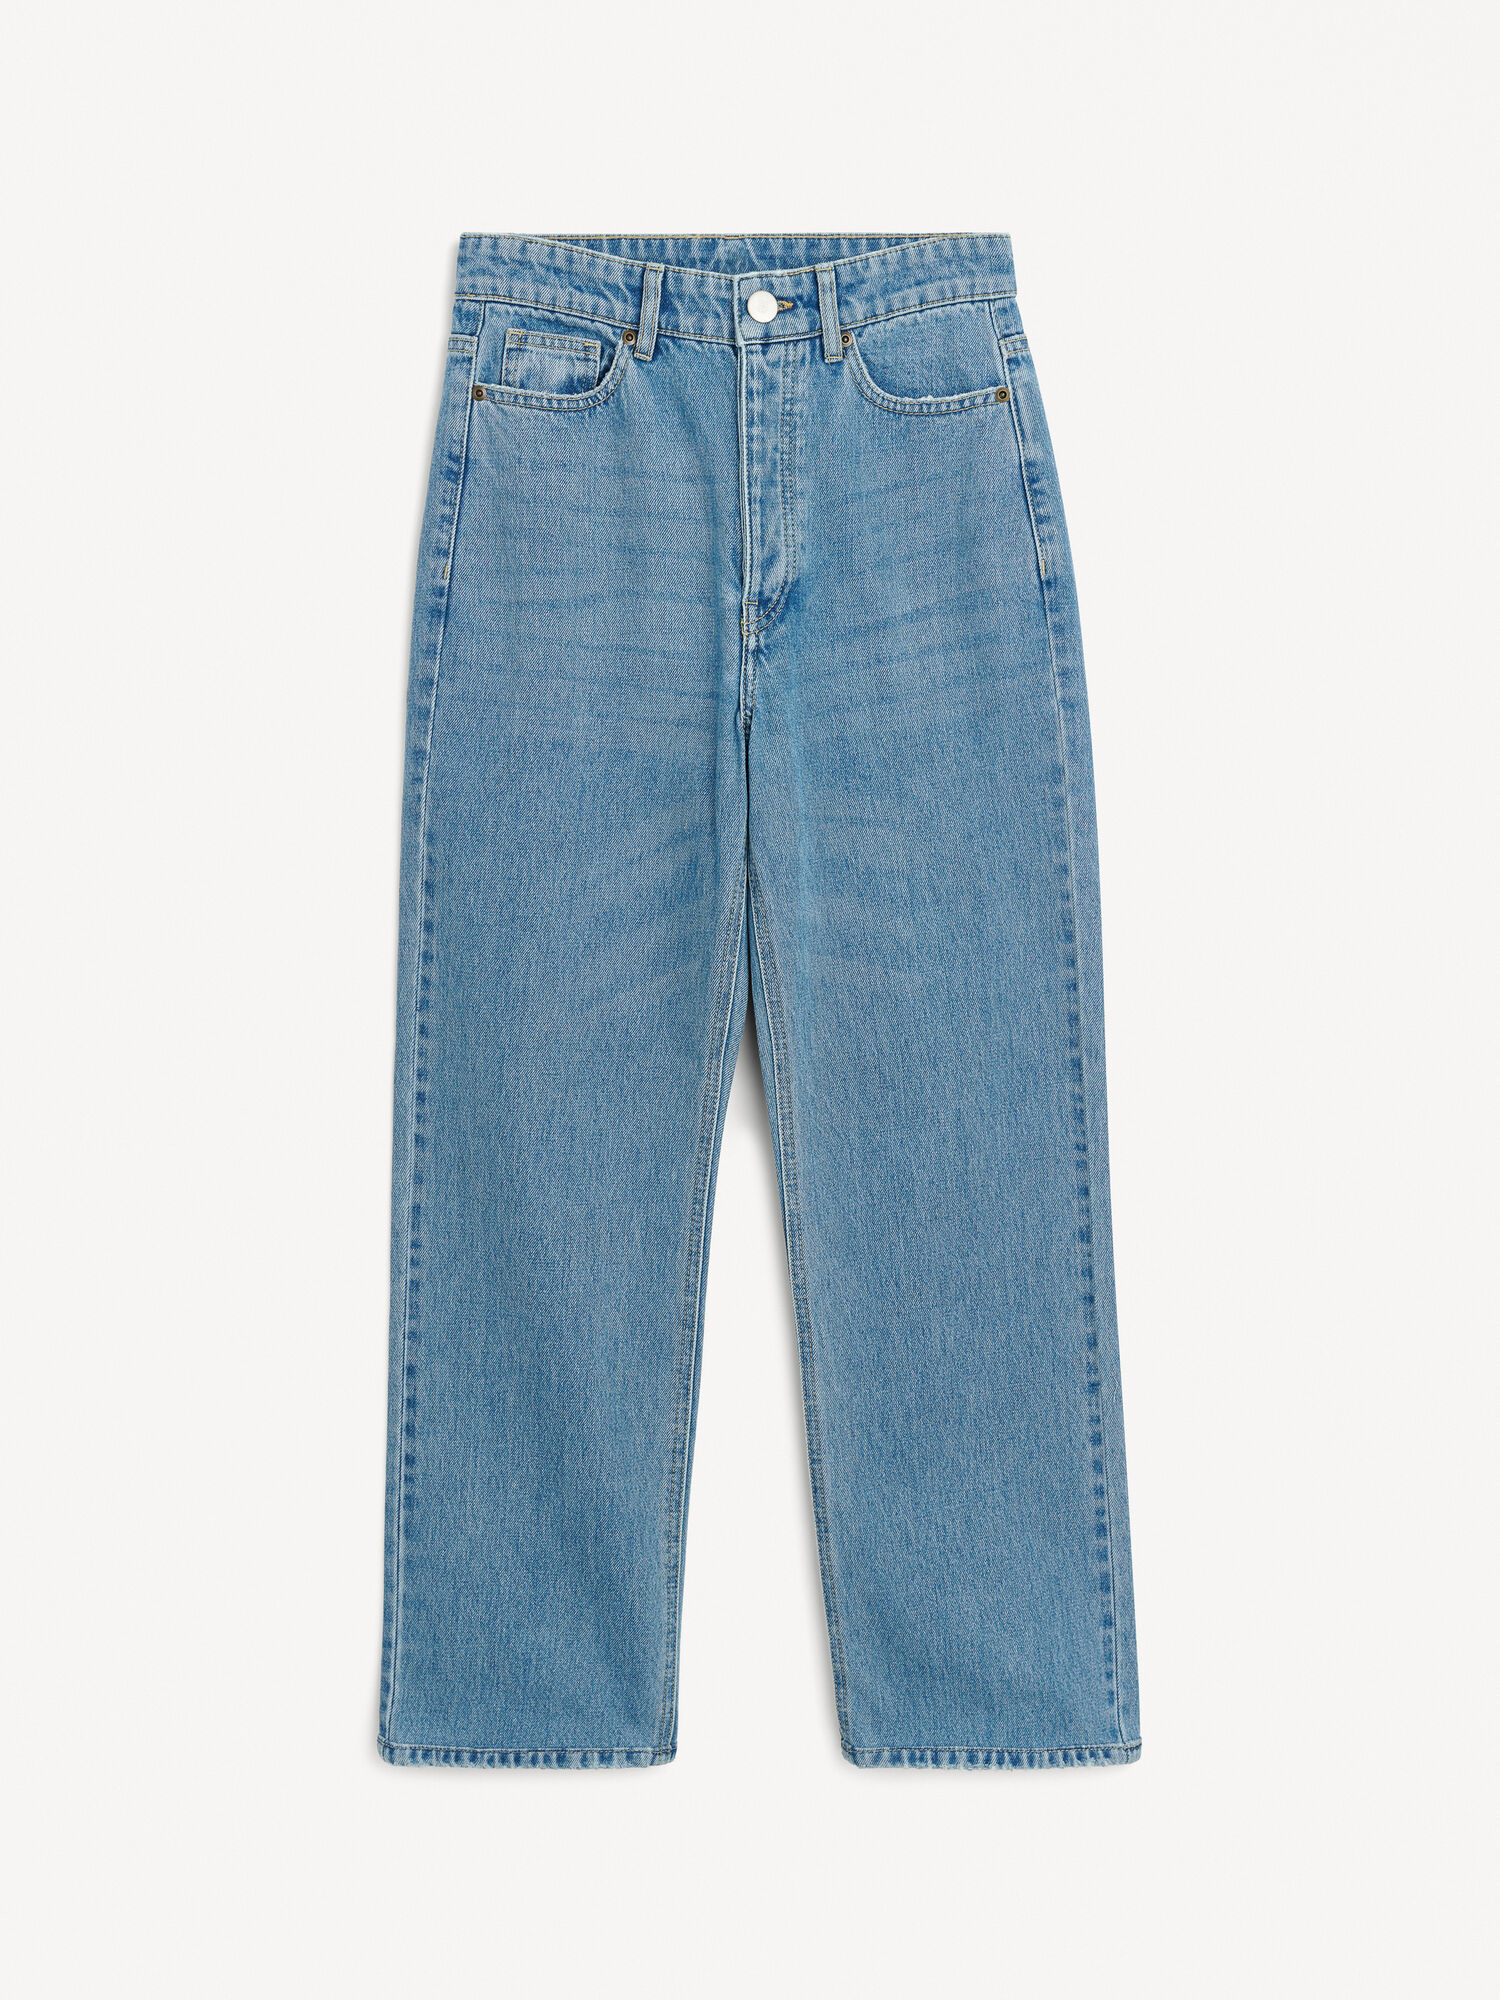 Milium organic cotton jeans